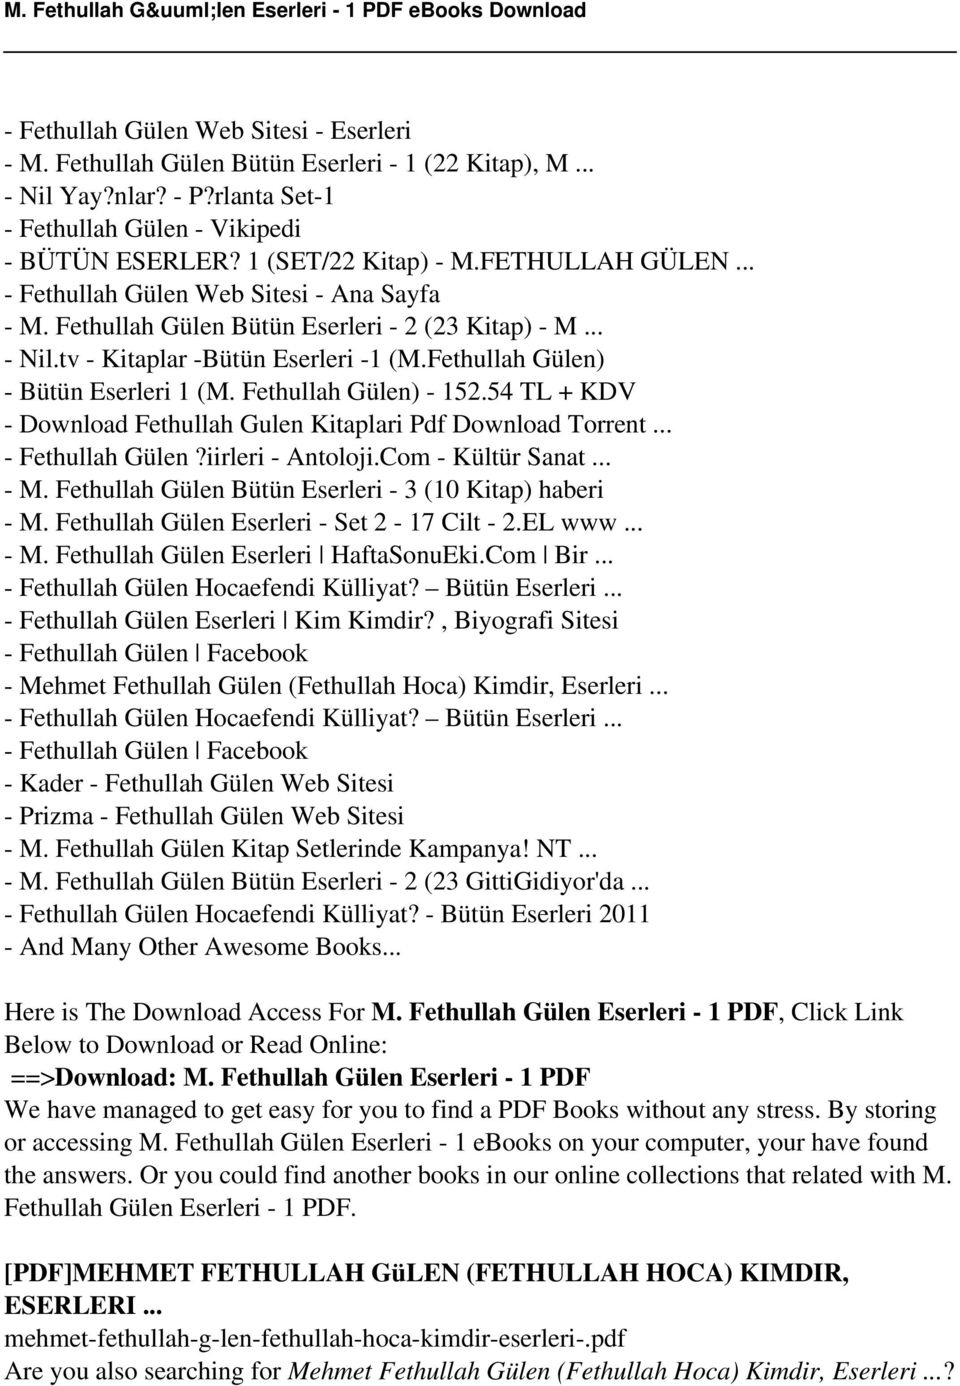 Fethullah Gülen) - 152.54 TL + KDV - Download Fethullah Gulen Kitaplari Pdf Download Torrent... - Fethullah Gülen?iirleri - Antoloji.Com - Kültür Sanat... - M.